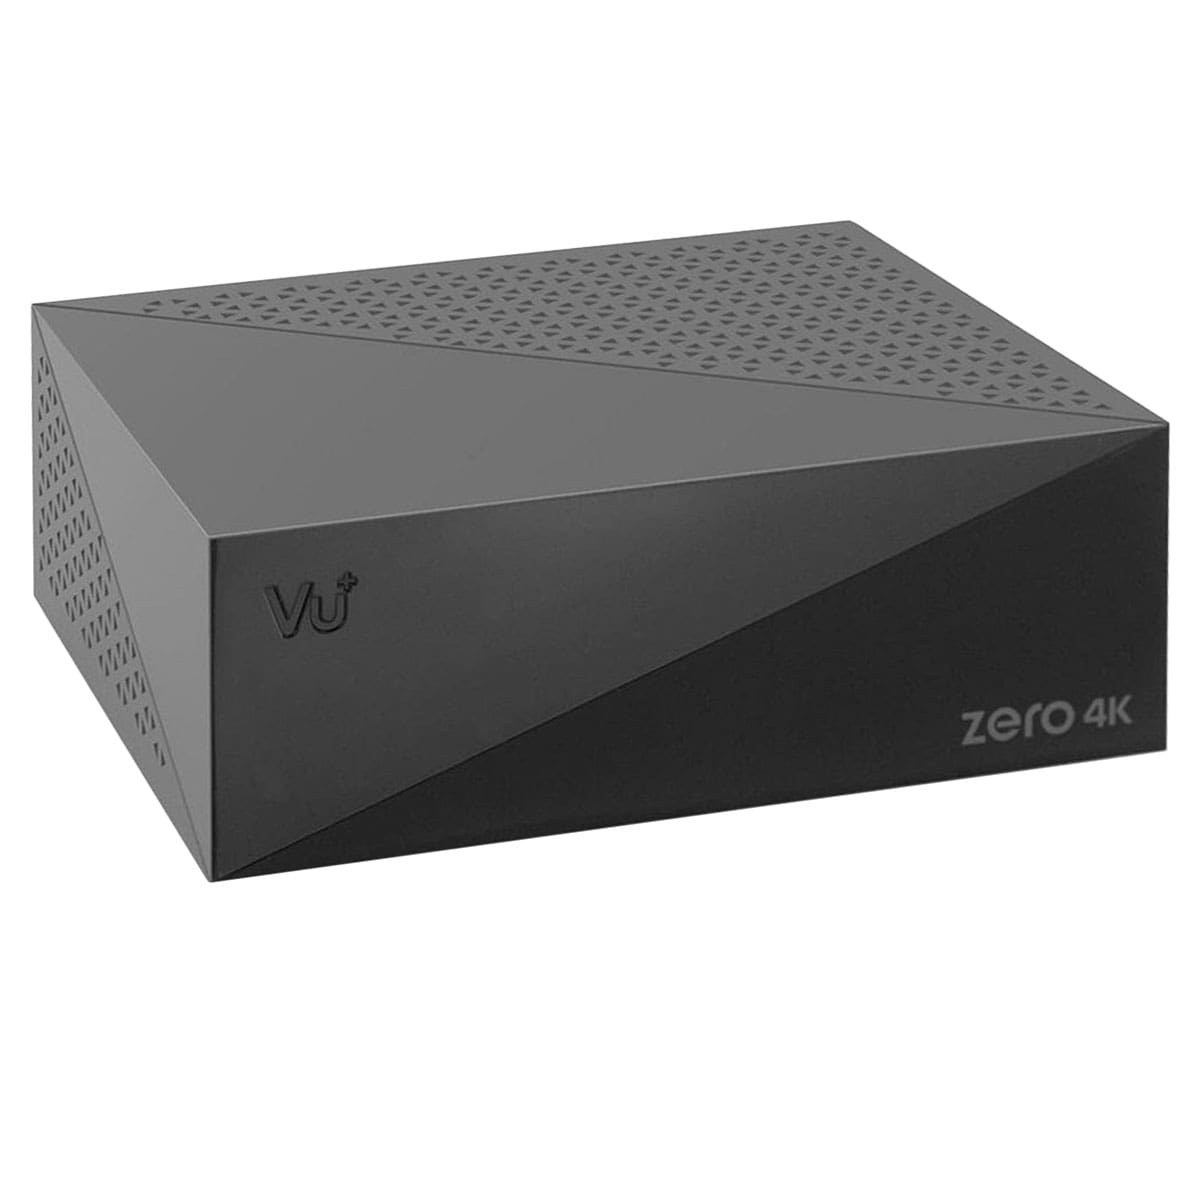 VU+ DVB-S2X 4K MS PVR-Kit inkl. Zero Sat (Schwarz) Receiver 4K 500GB